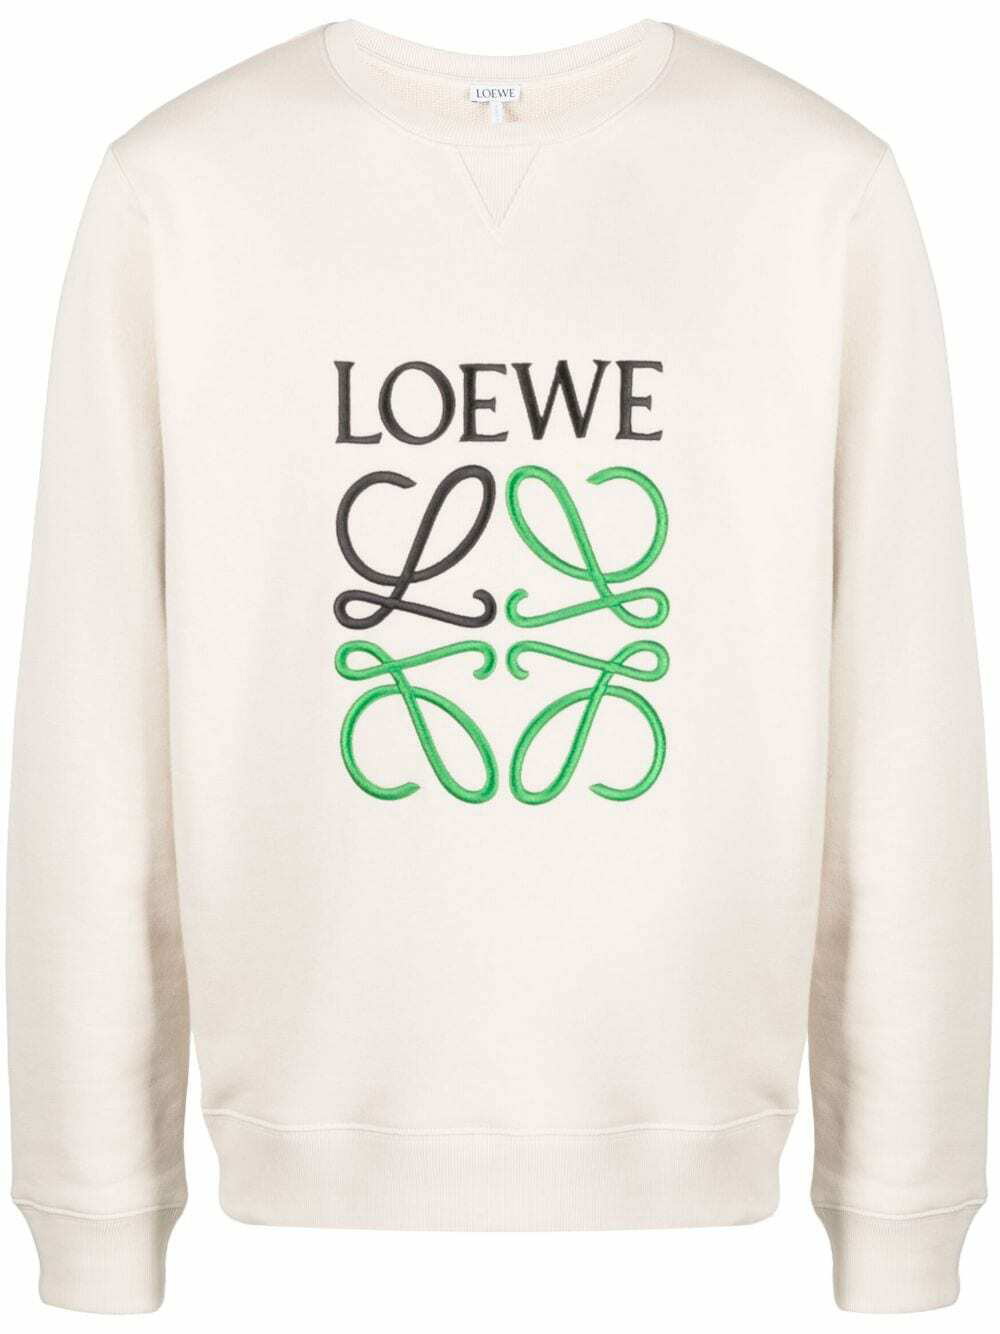 LOEWE - Logo Cotton Sweatshirt Loewe